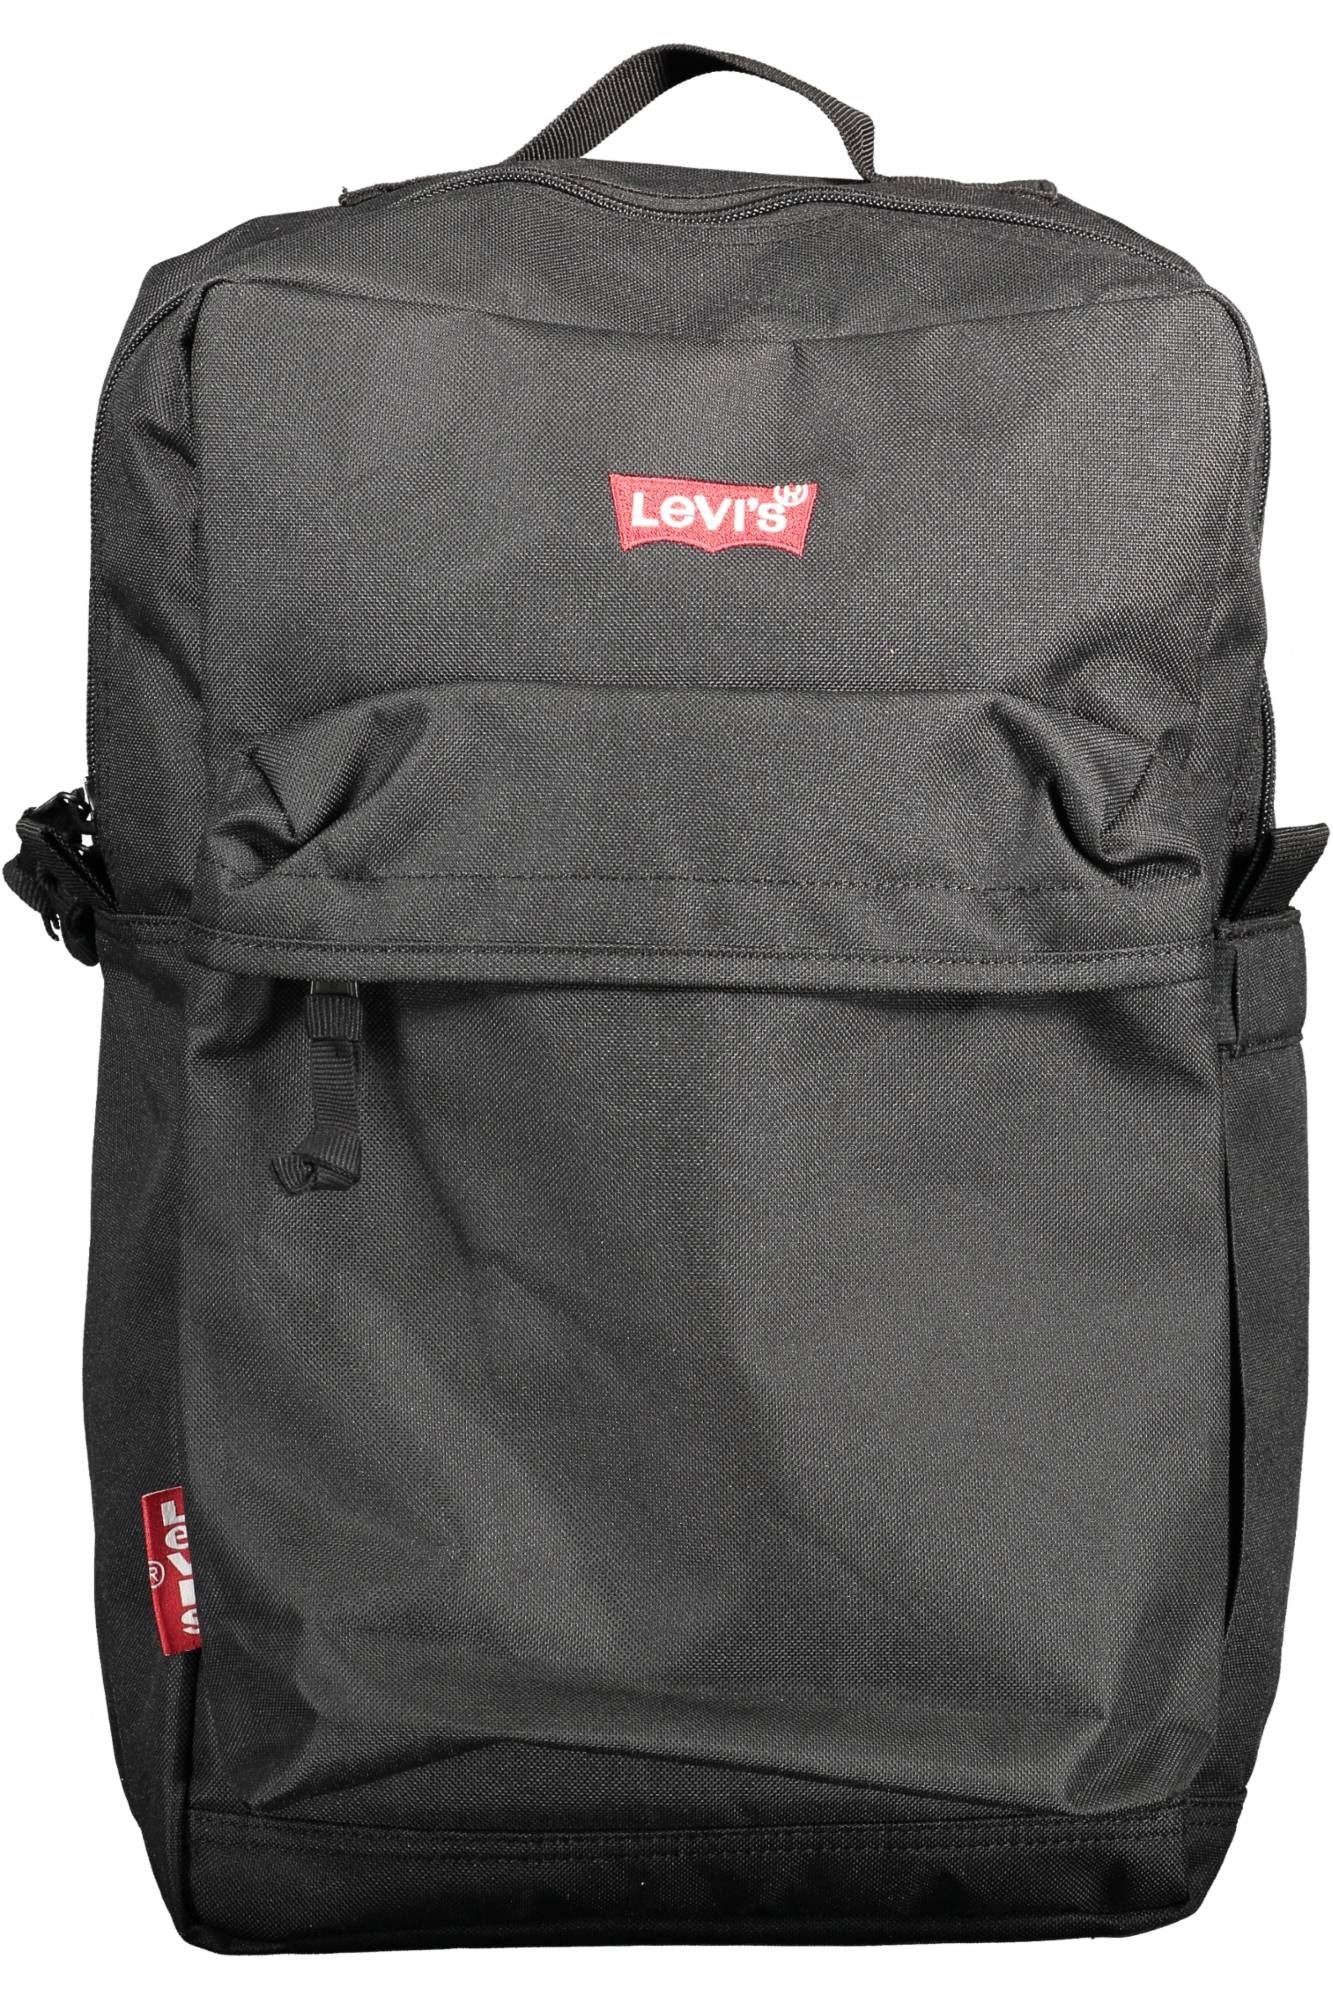 Levi's Eco-Friendly Sleek Black Backpack